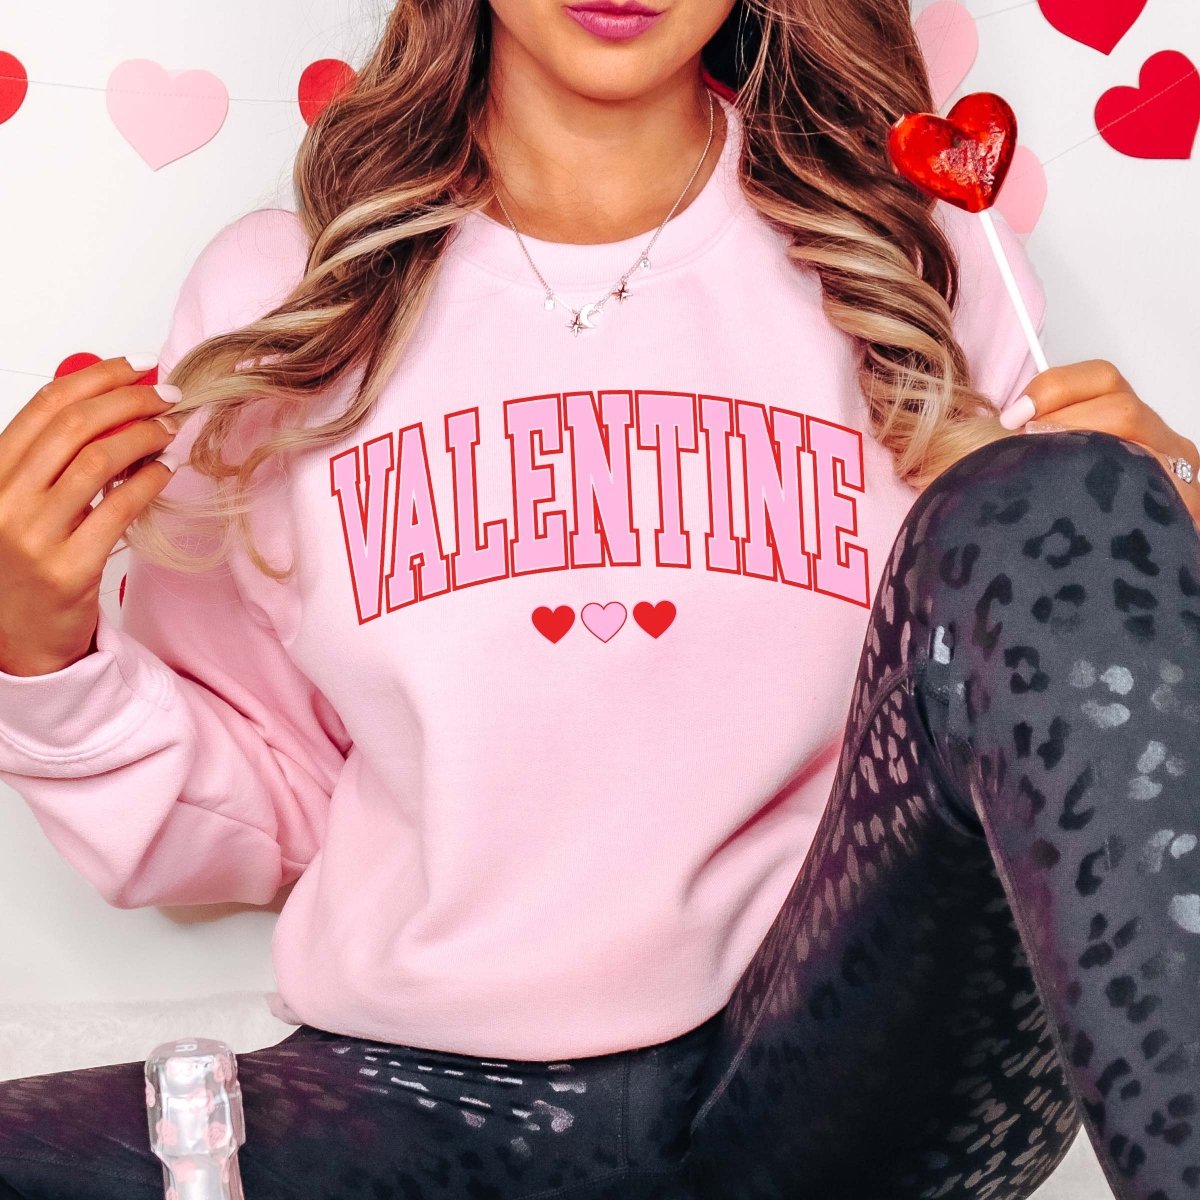 Valentine Collegiate Hearts Crew Sweatshirt - Limeberry Designs